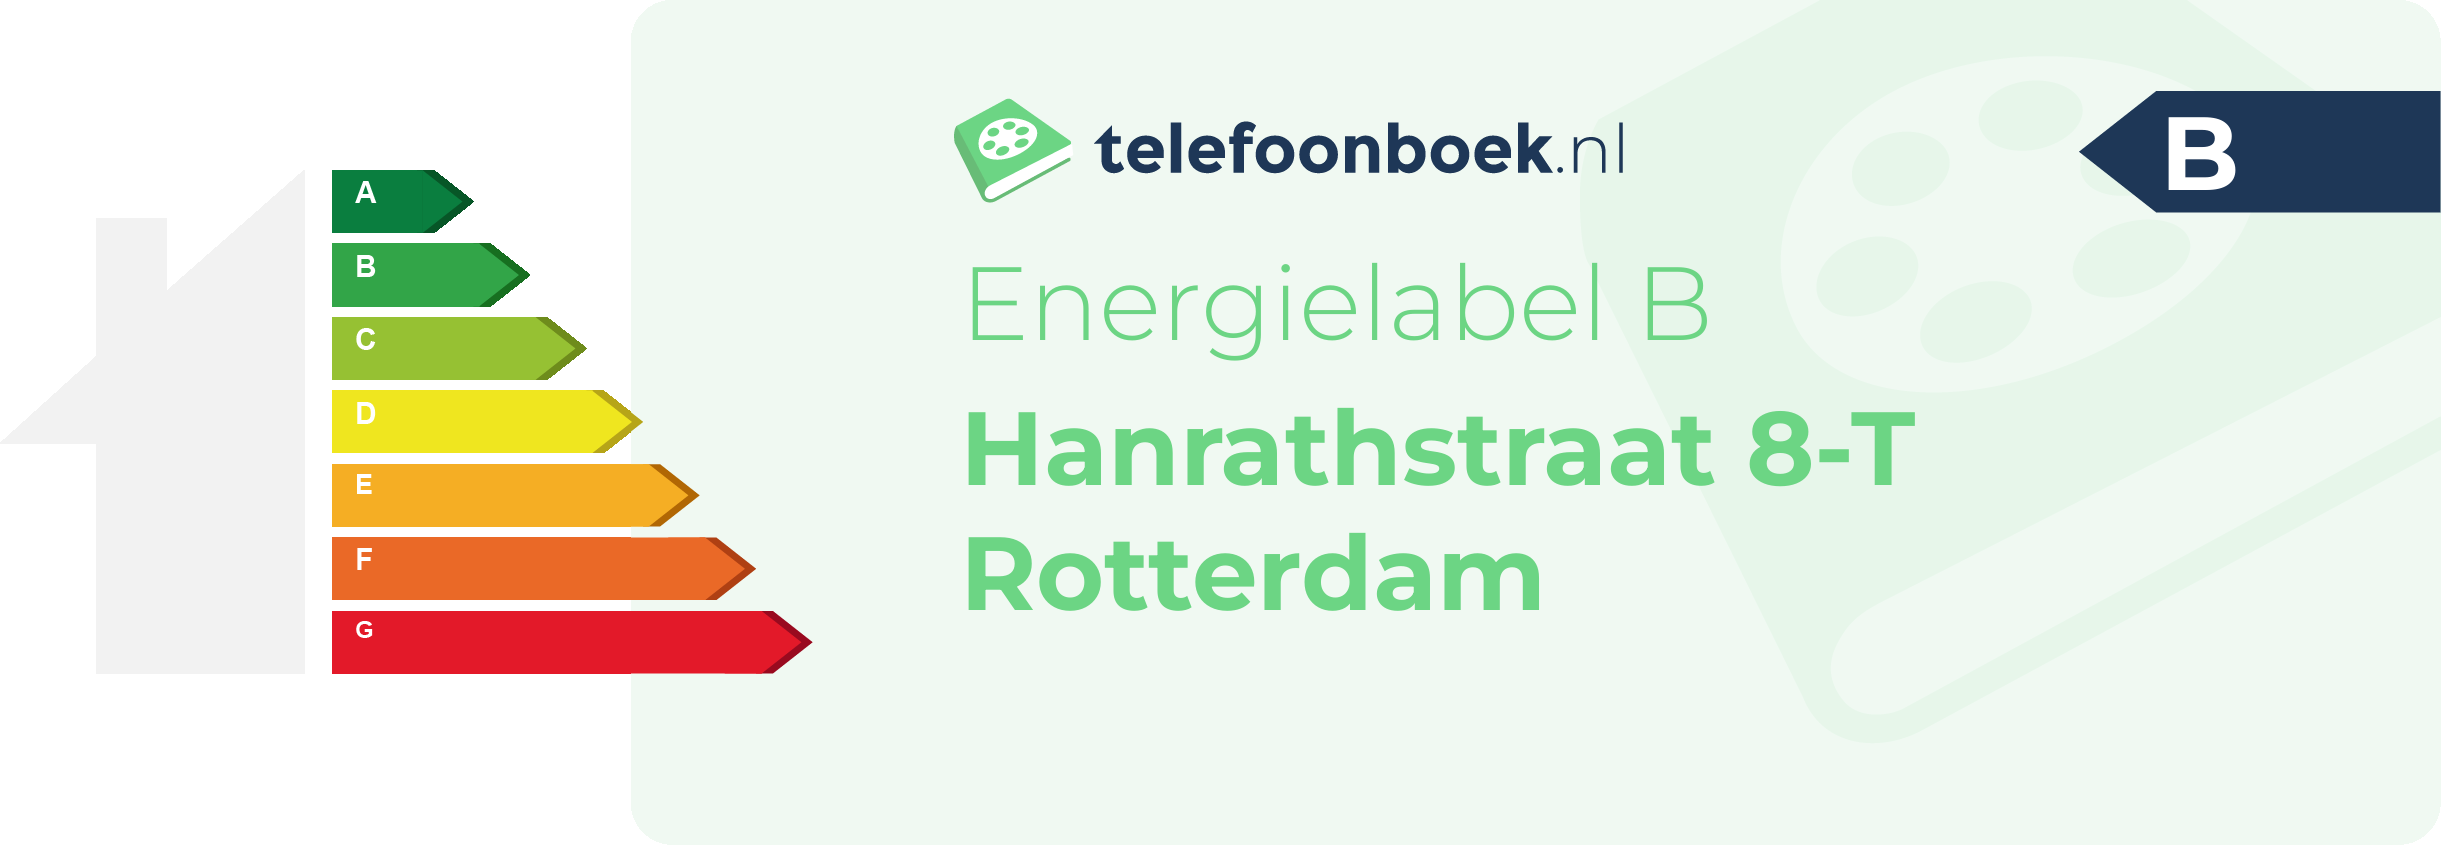 Energielabel Hanrathstraat 8-T Rotterdam